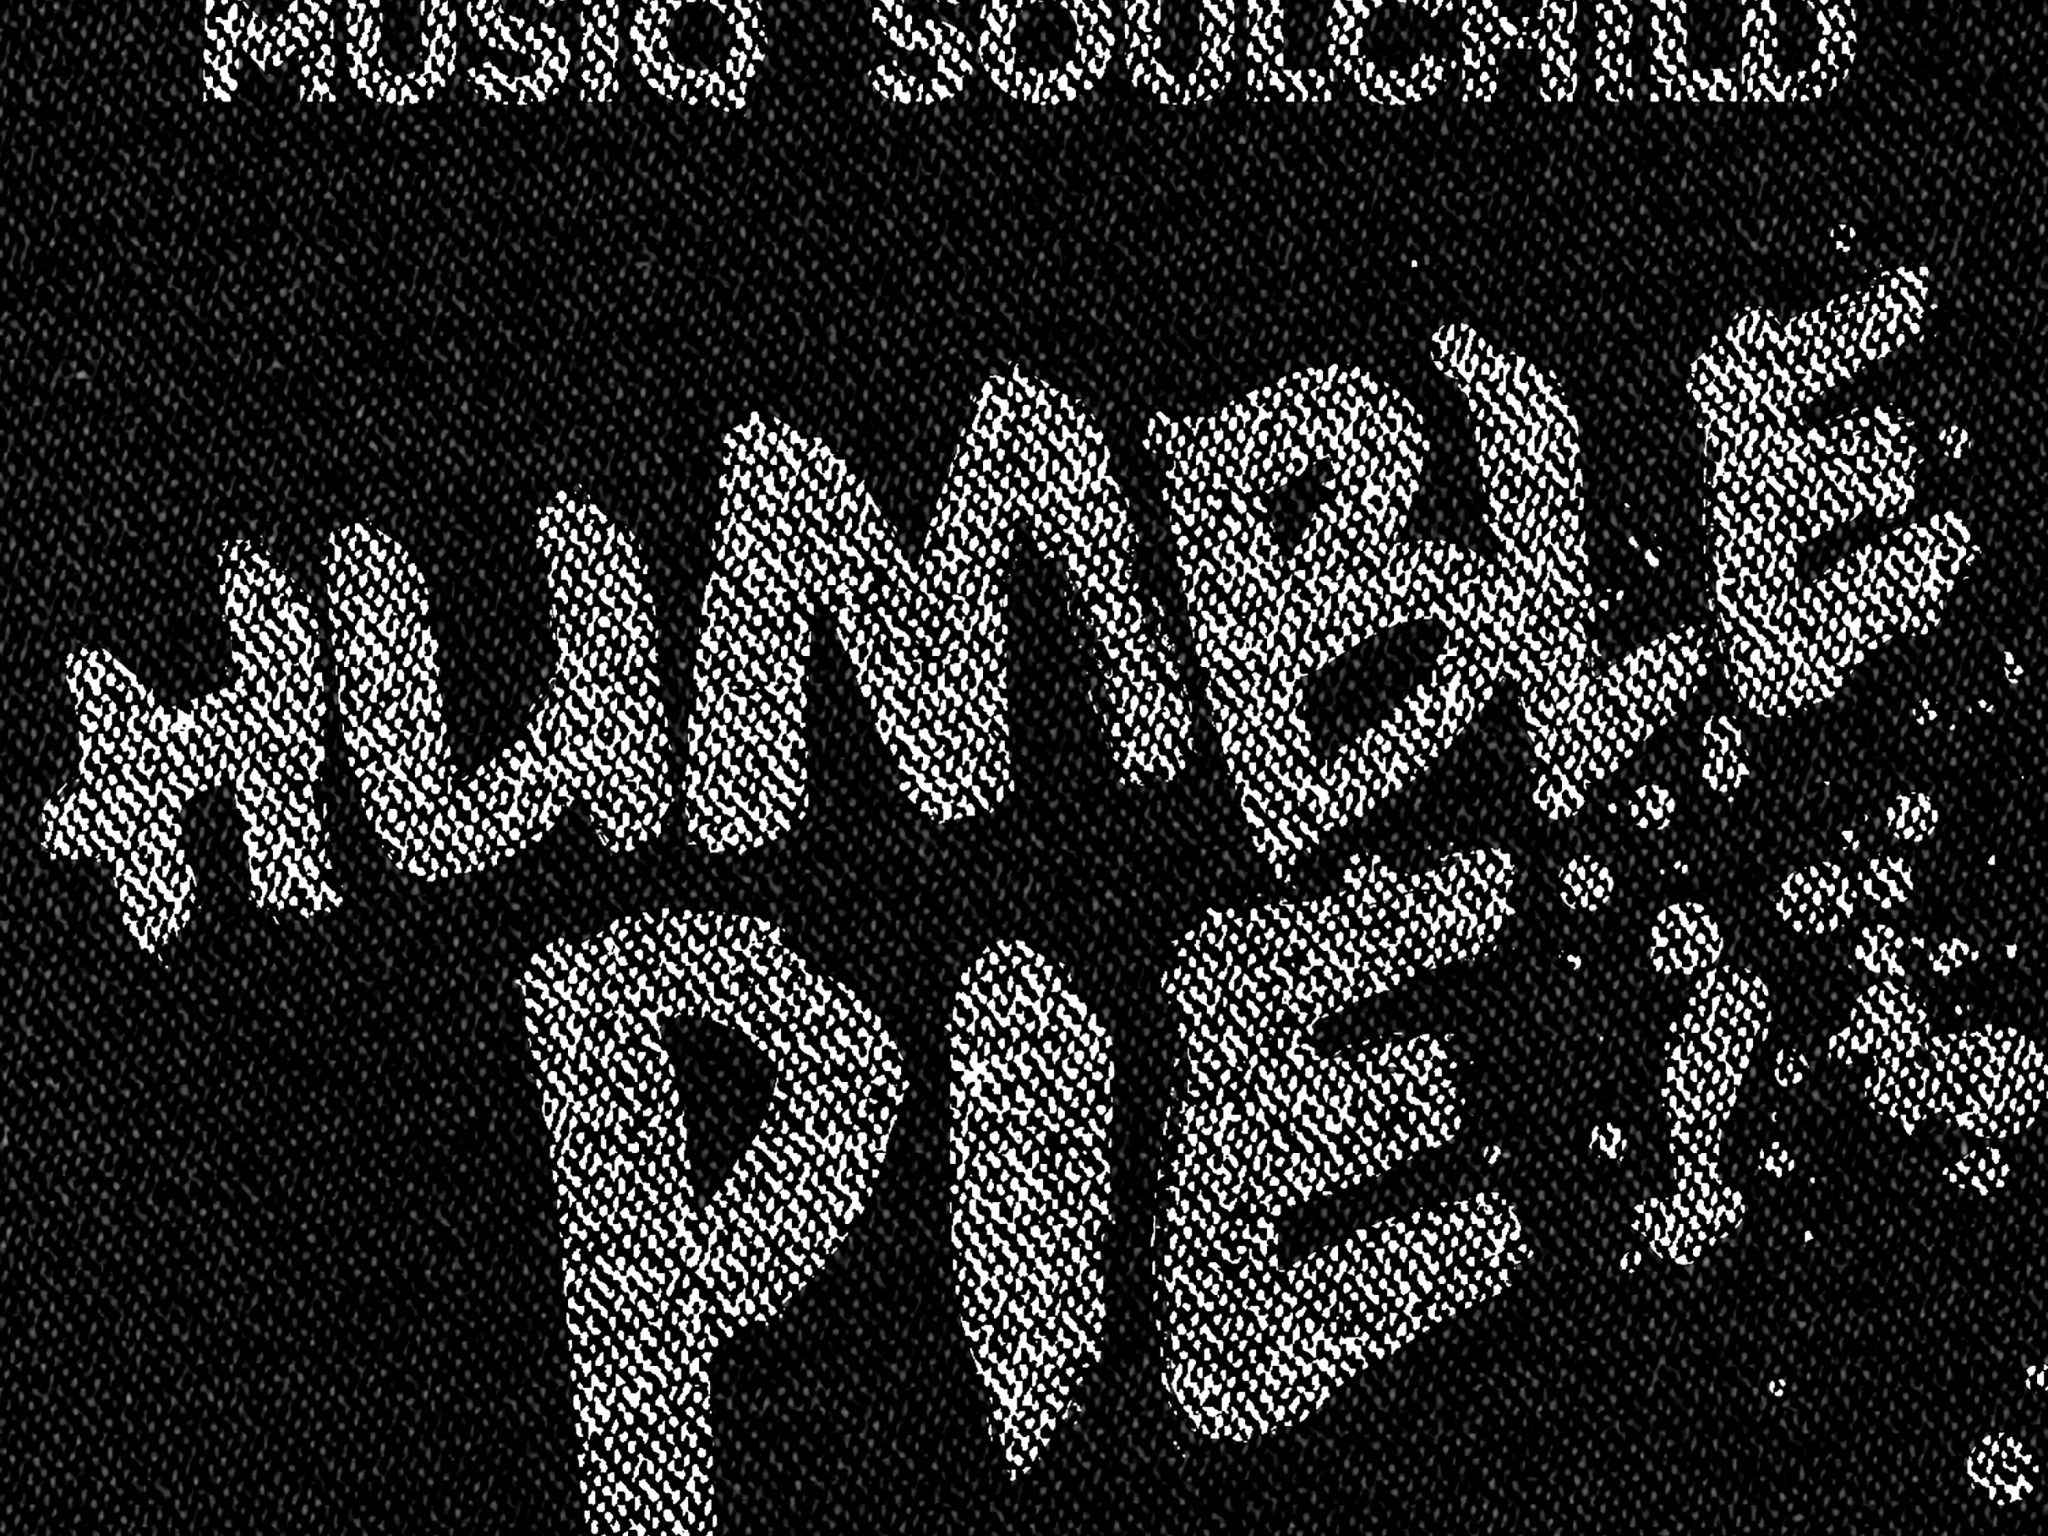 Musiq Soulchild Humble Pie Single Cover